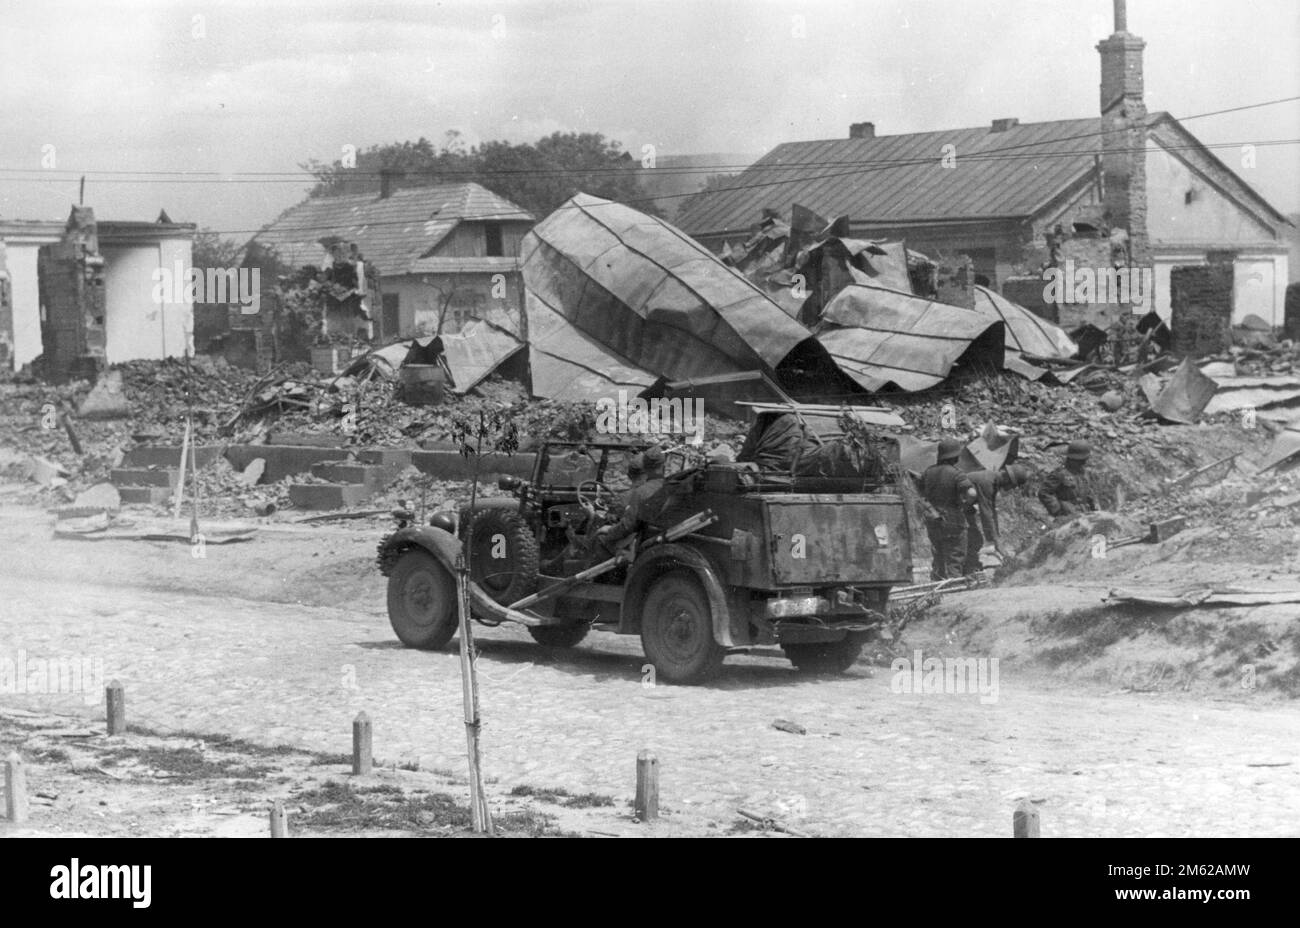 Soldati tedeschi e una jeep nelle rovine di una città sovietica sconosciuta. Foto scattata durante l'operazione Barbarossa, l'invasione nazista dell'Unione Sovietica Foto Stock